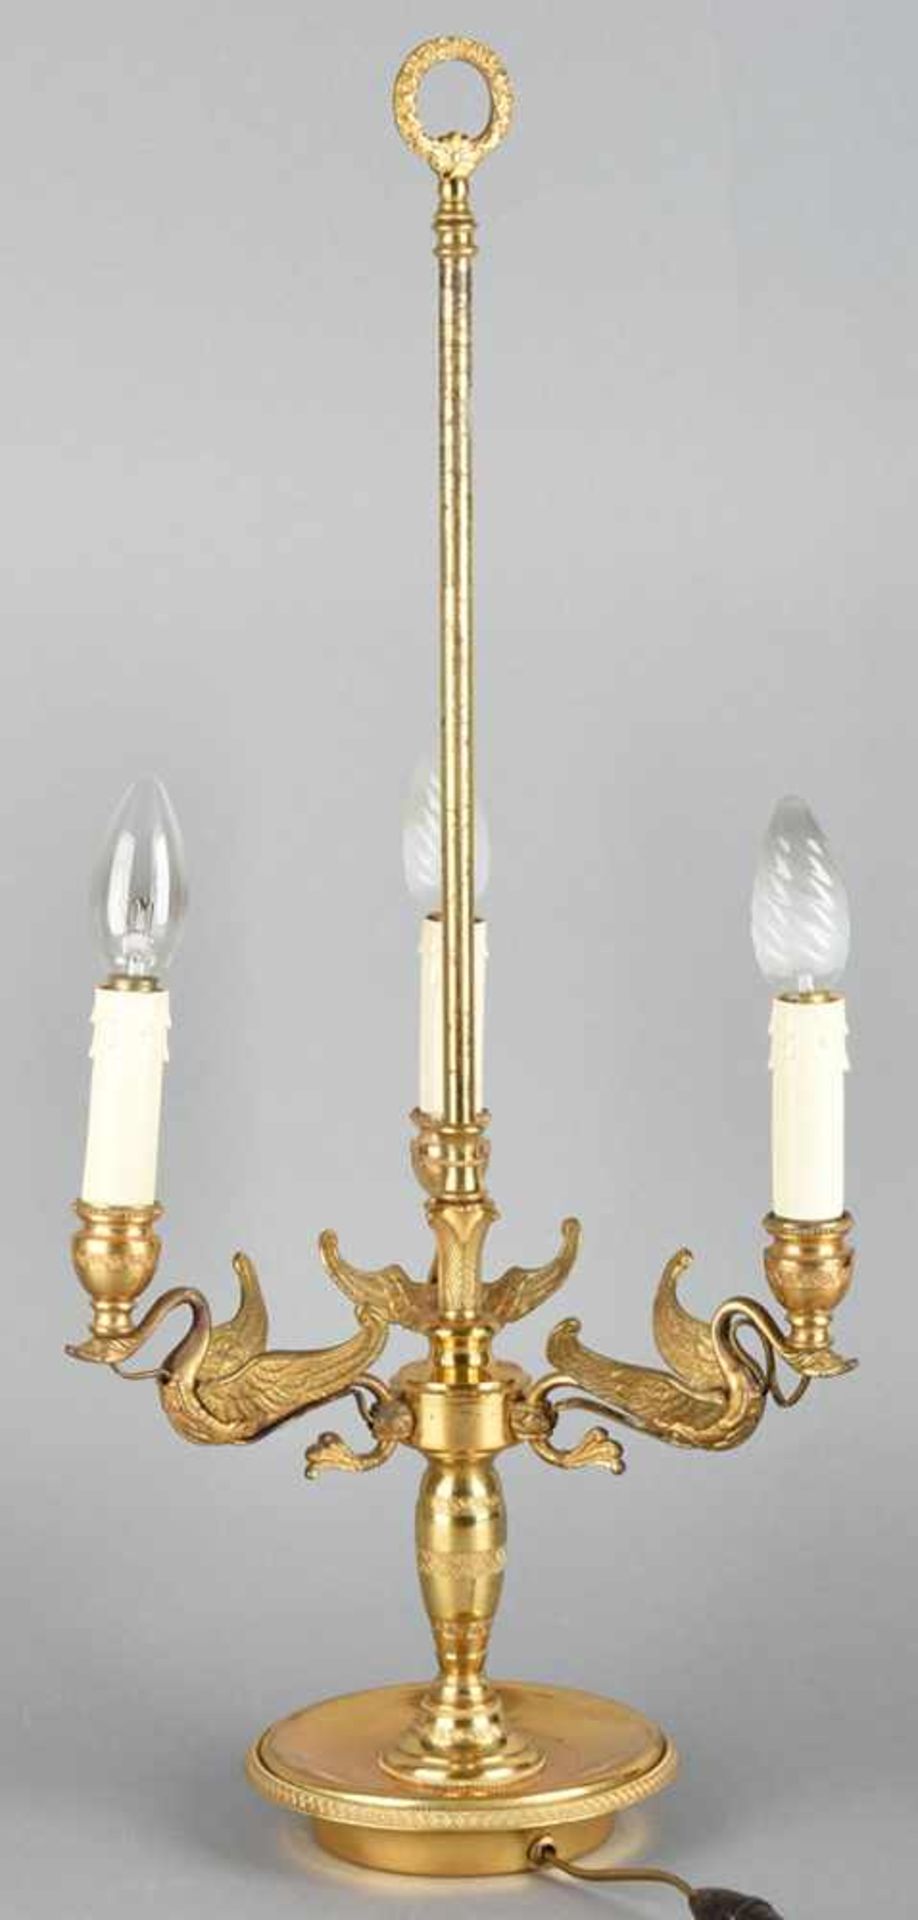 Bouillotte-Leuchte im Empirestil, Messing vergoldet, dreiflammig elektrifiziert, auf verziertem - Bild 3 aus 3